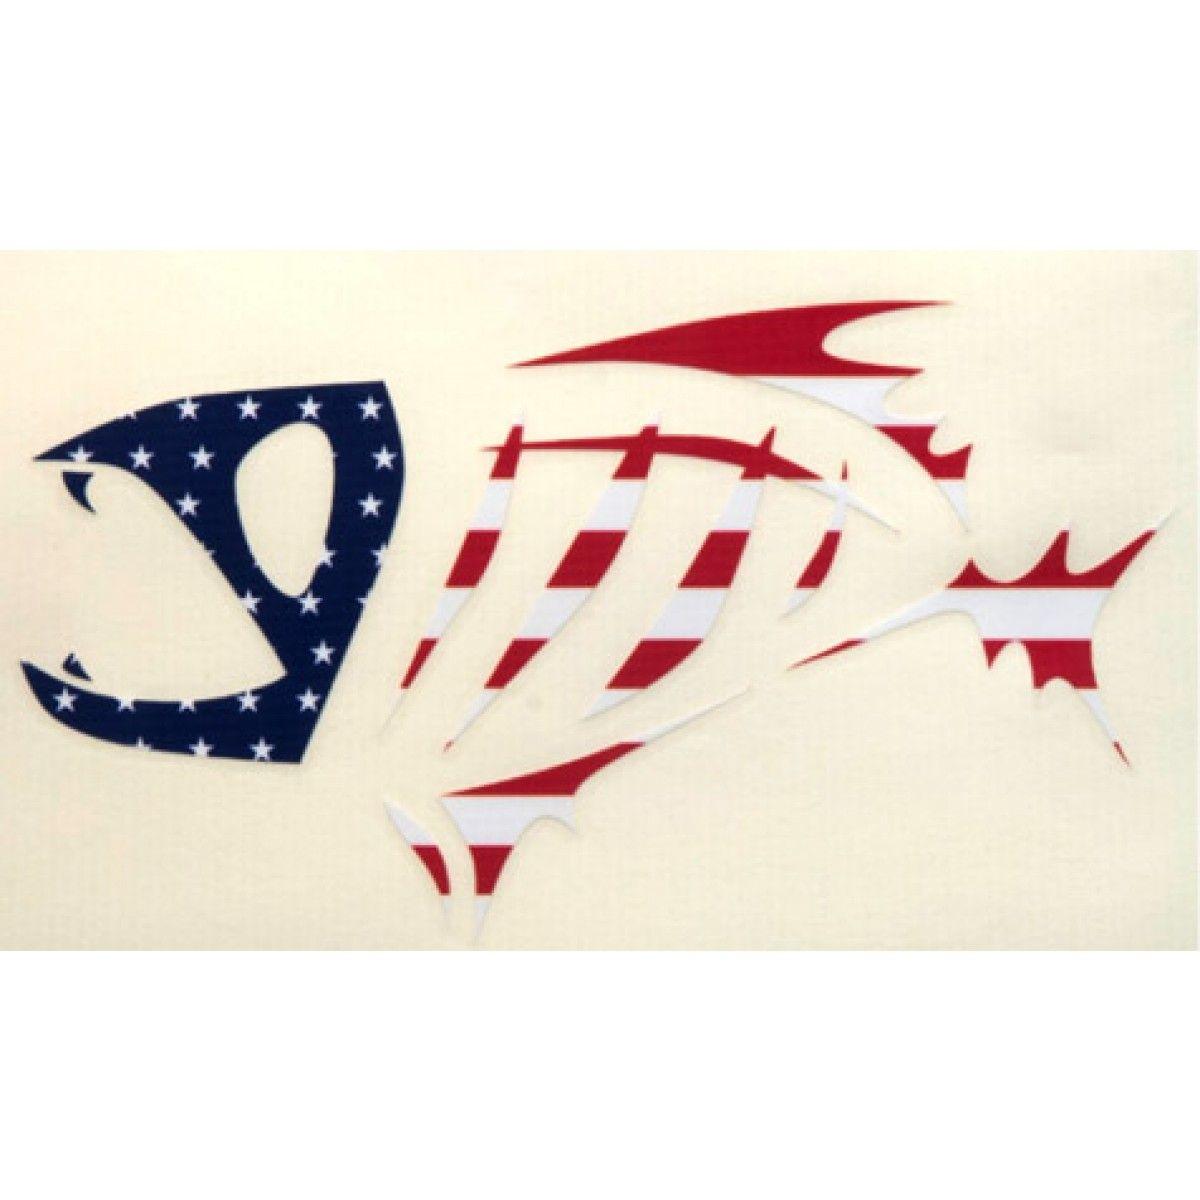 G.Loomis Logo - G Loomis Bone Fish Logo Decals | Susquehanna Fishing Tackle